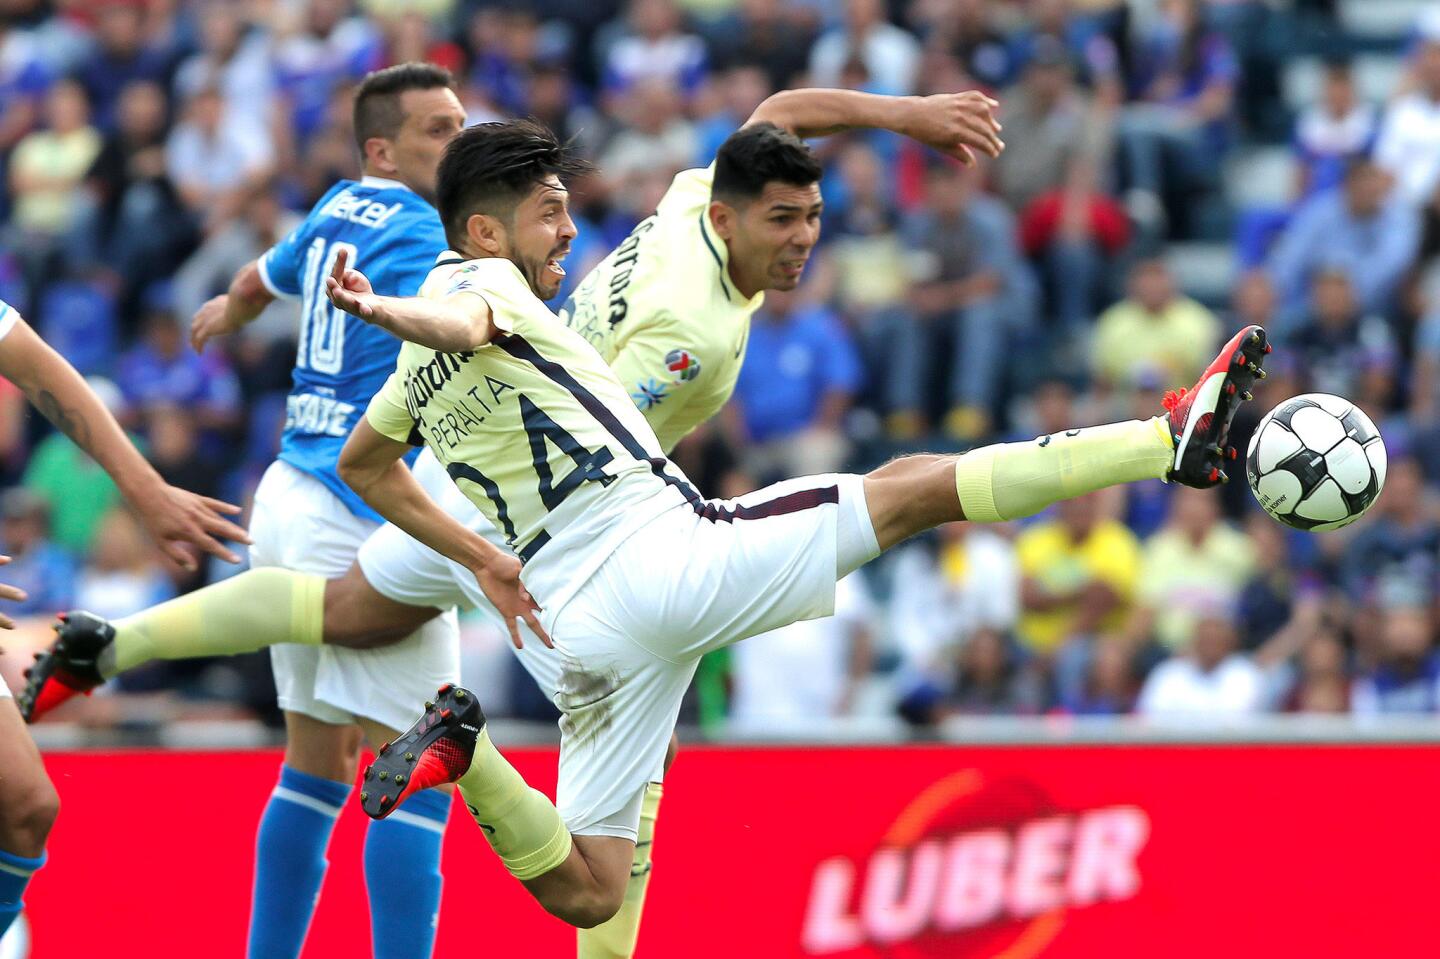 El jugador del América, Oribe Peralta (c), se lanzó y conectó el balón para anotarle a Cruz Azul, en juego correspondiente a la jornada ocho del futbol mexicano, en el estadio Azul de Ciudad de México.